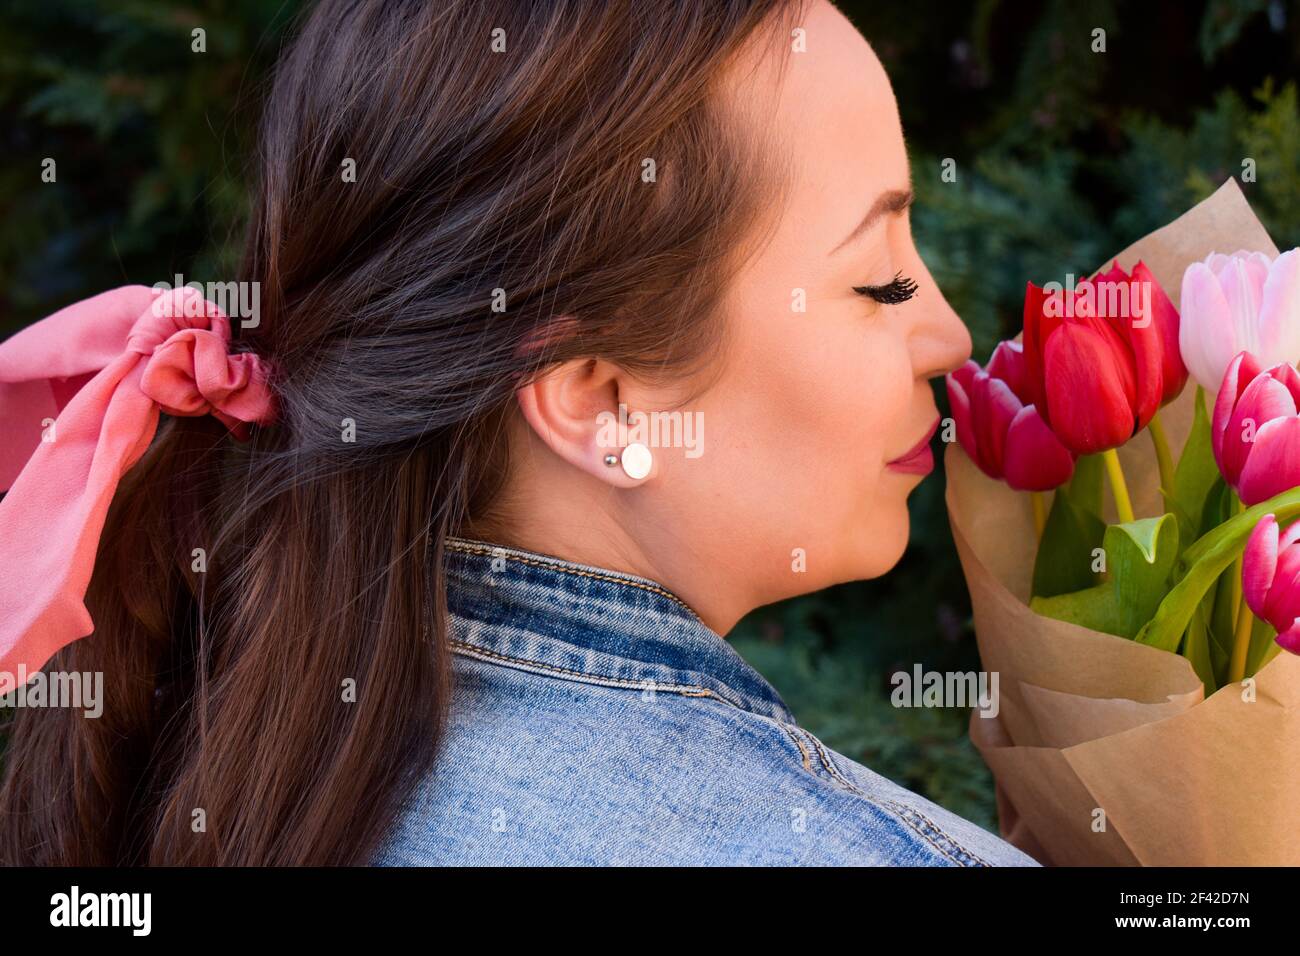 Frau mit einer rosa Schleife im Haar, die Tulpe hält Bouquet Stockfoto